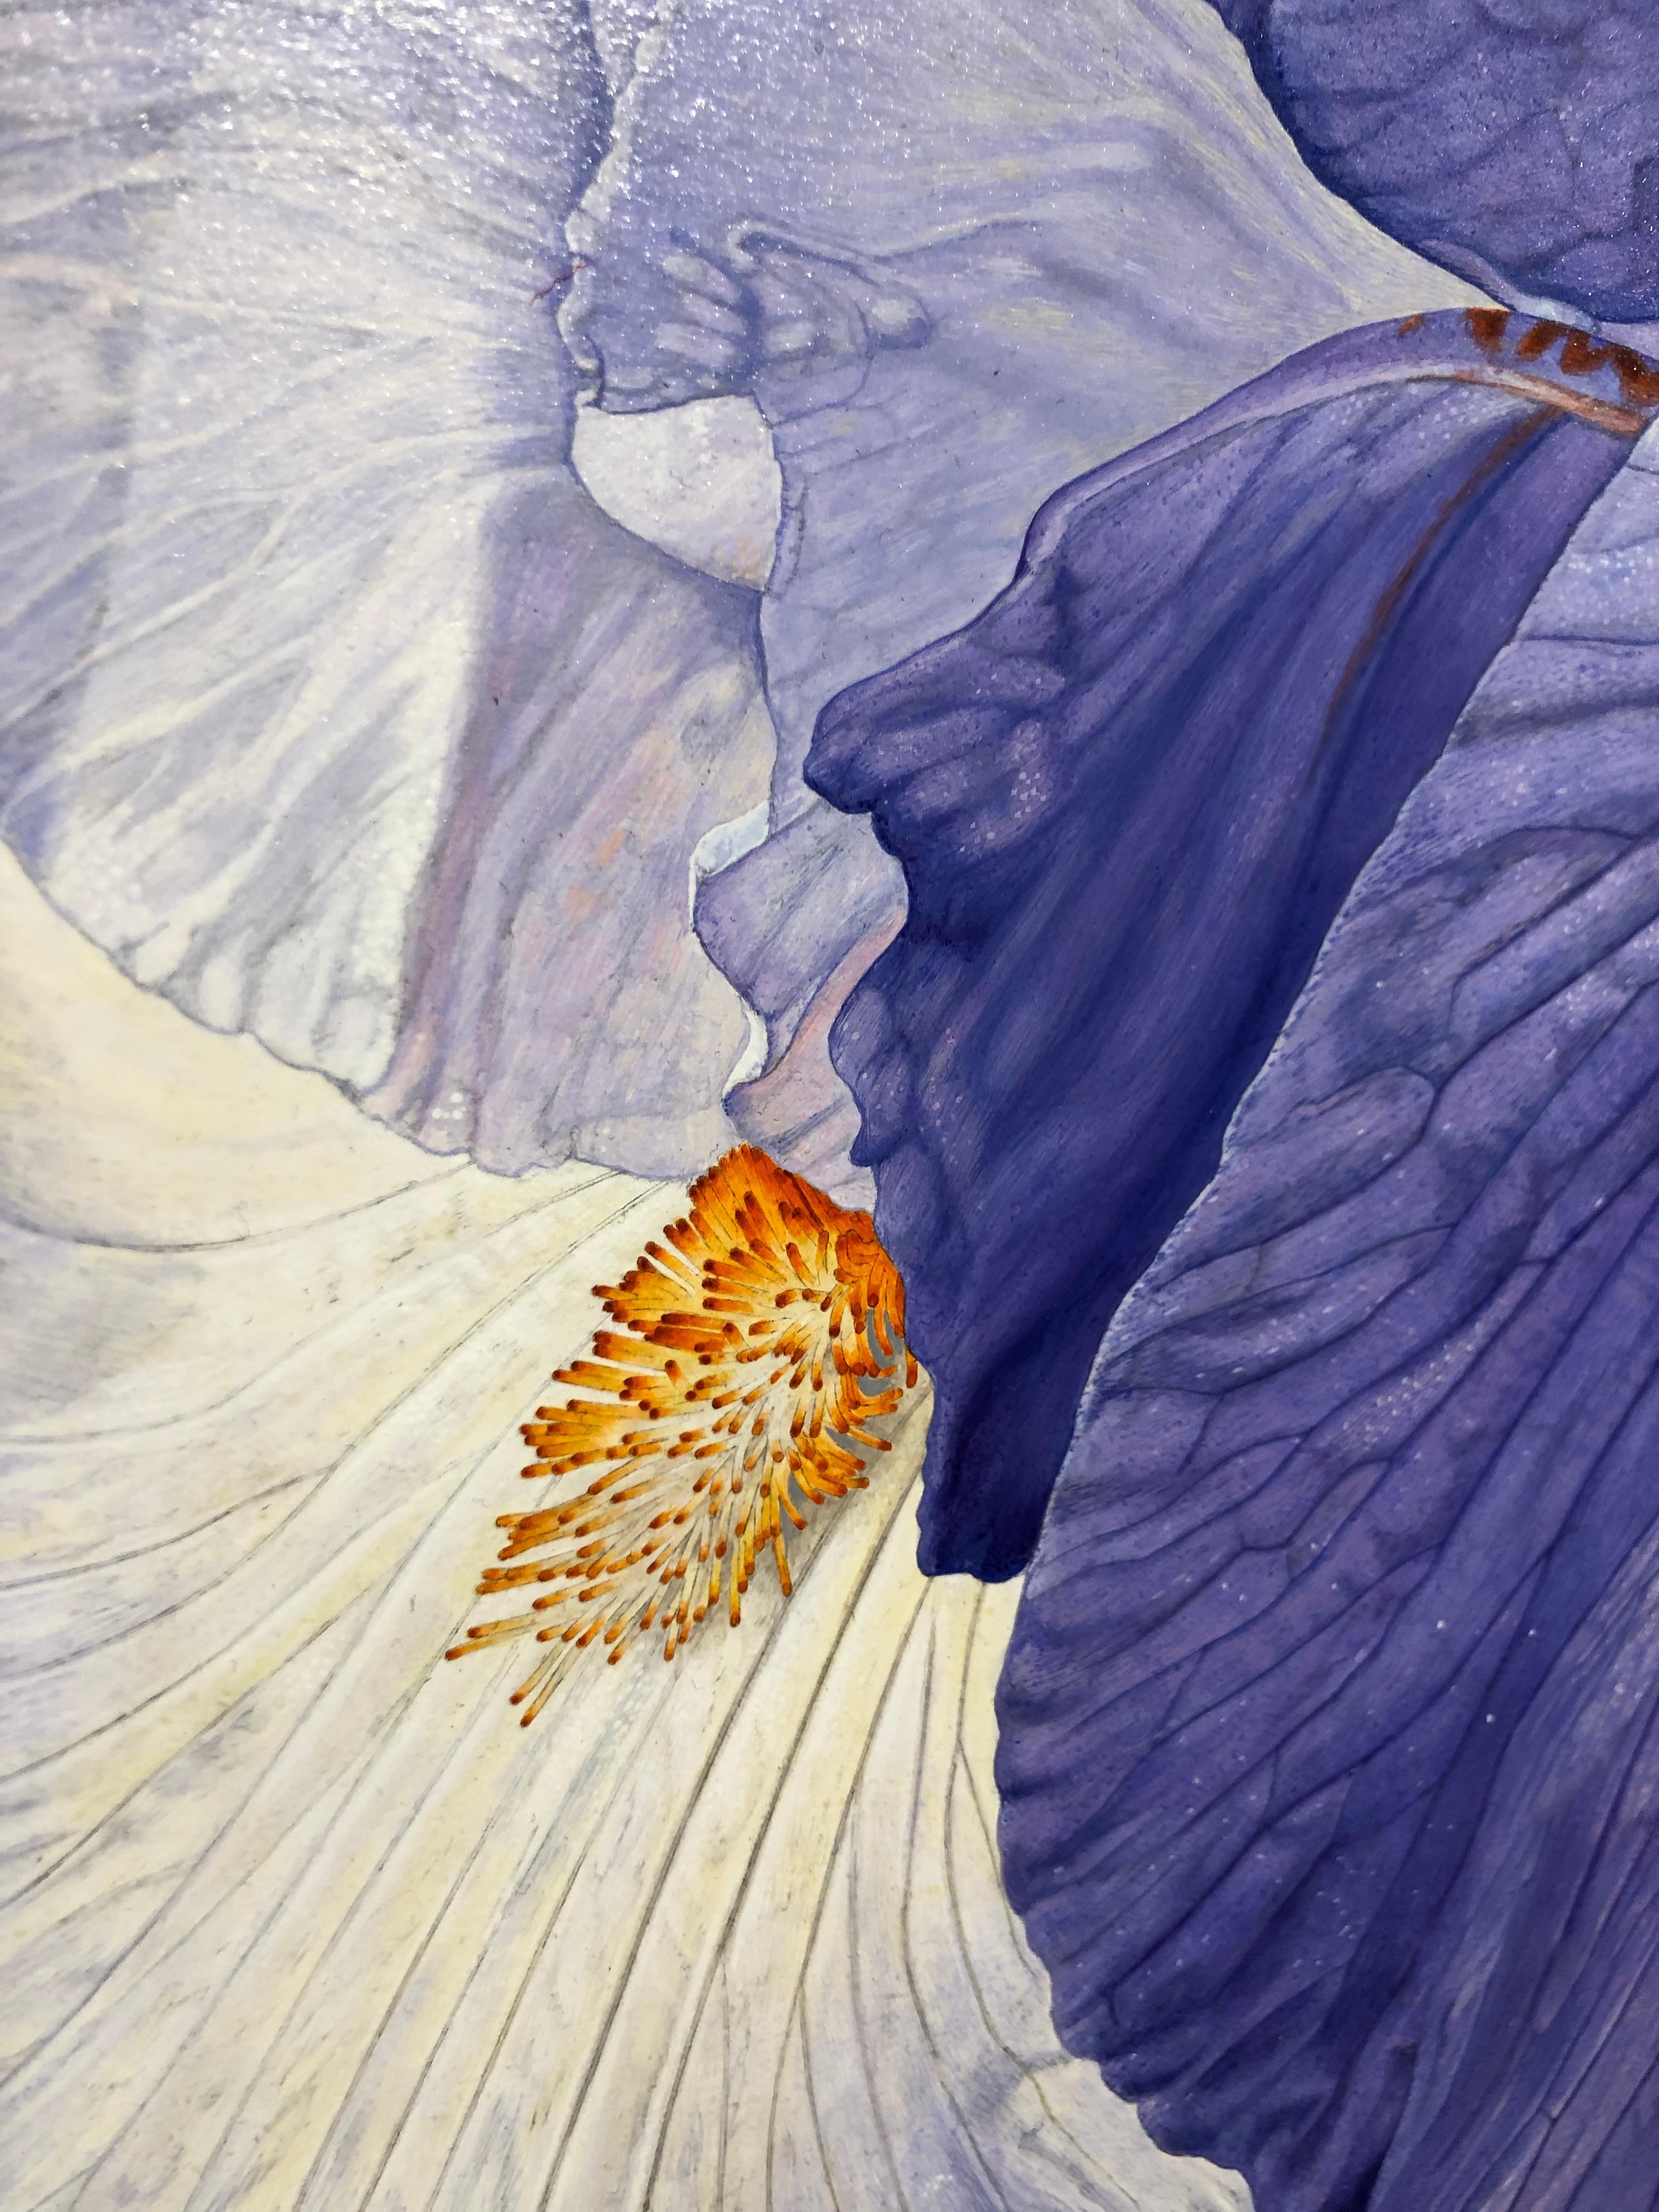 Dieses sehr detaillierte:: lebendige Gemälde einer Hummel auf einer Irisblüte fängt jedes Detail in surrealer Nähe ein.  

Rick Pas
Iris mit Hummel
Acryl auf Platte
18h x 24w Zoll
45::72 H x 60::96 B cm

STATEMENT DES KÜNSTLERS
Schaffen ist eine